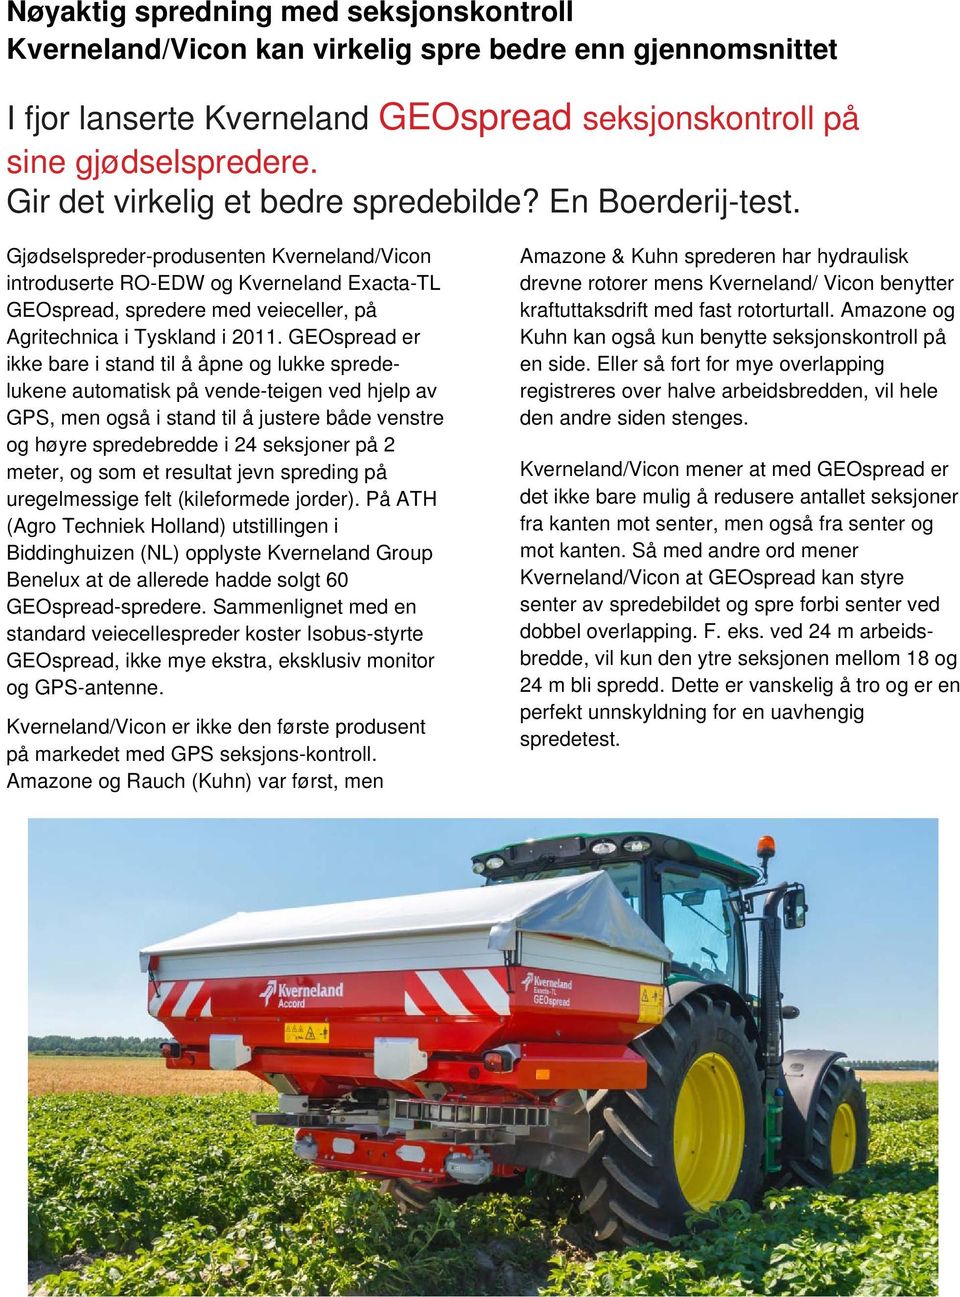 Gjødselspreder-produsenten Kverneland/Vicon introduserte RO-EDW og Kverneland Exacta-TL GEOspread, spredere med veieceller, på Agritechnica i Tyskland i 2011.